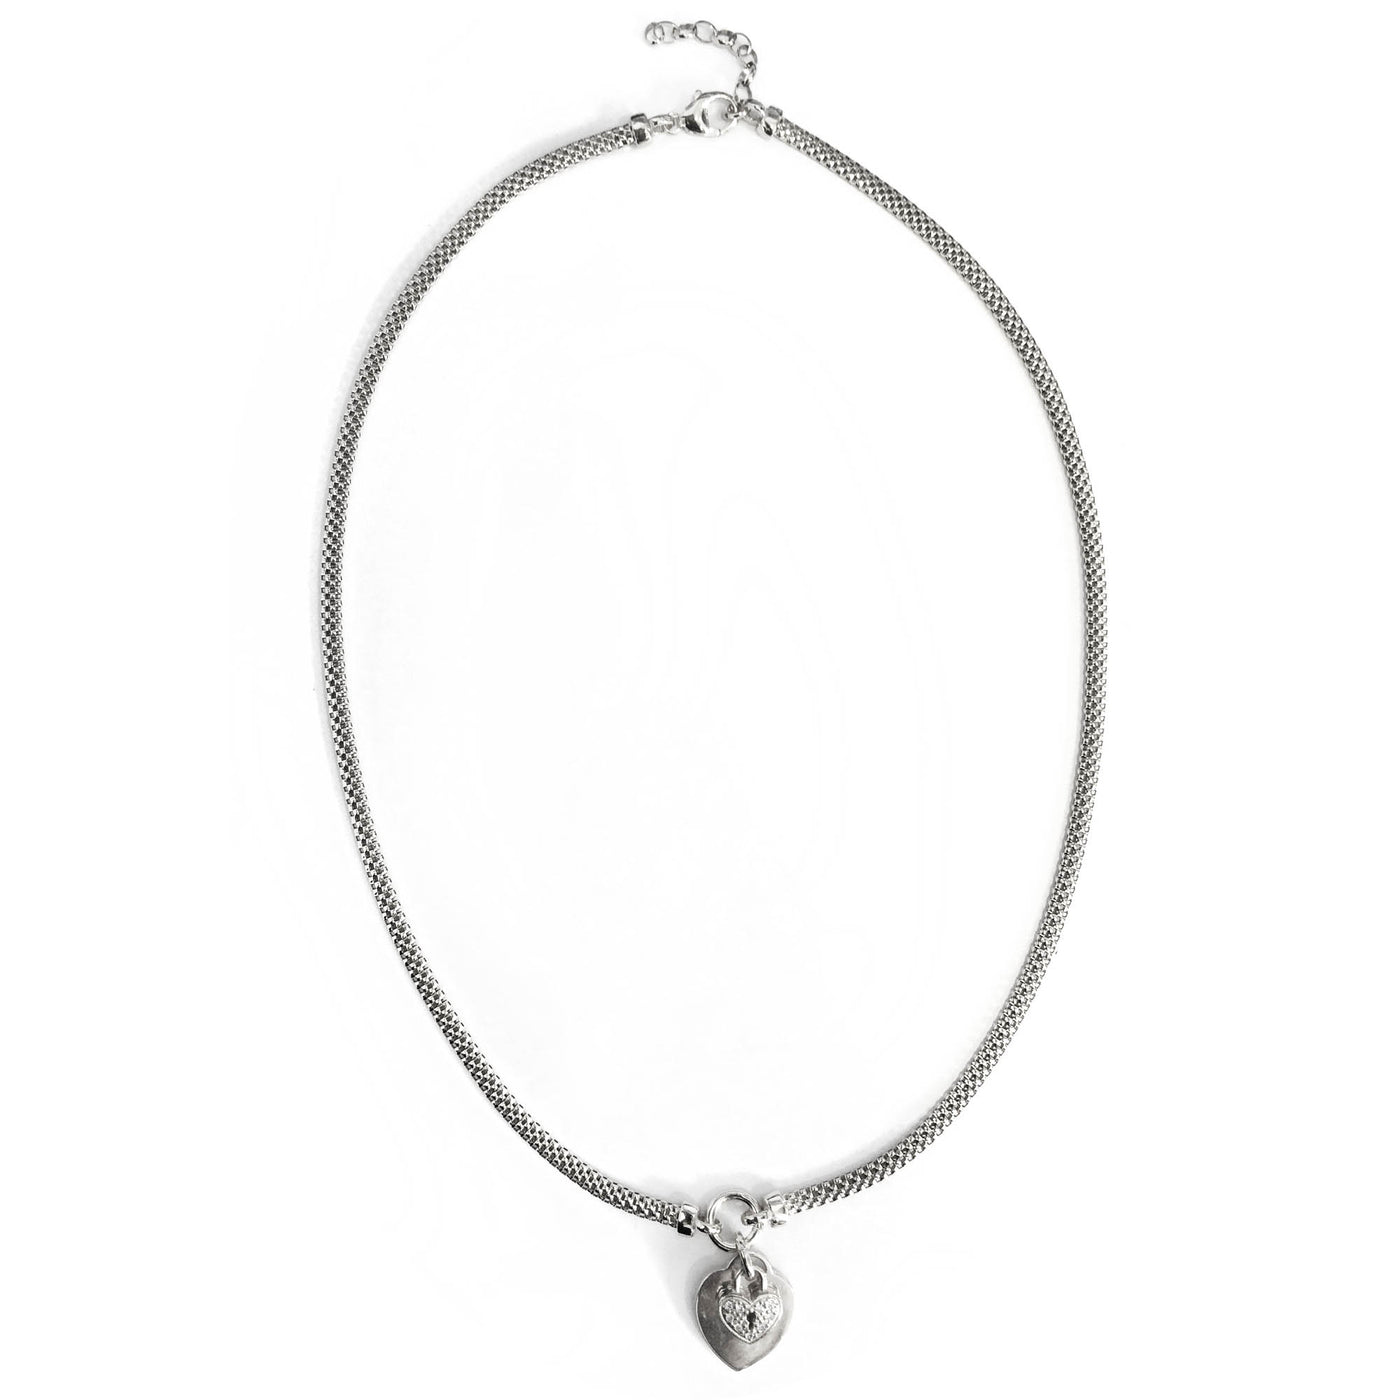 Rebecca Sloane Rhodium Silver Popcorn Chain CZ Charm Necklace